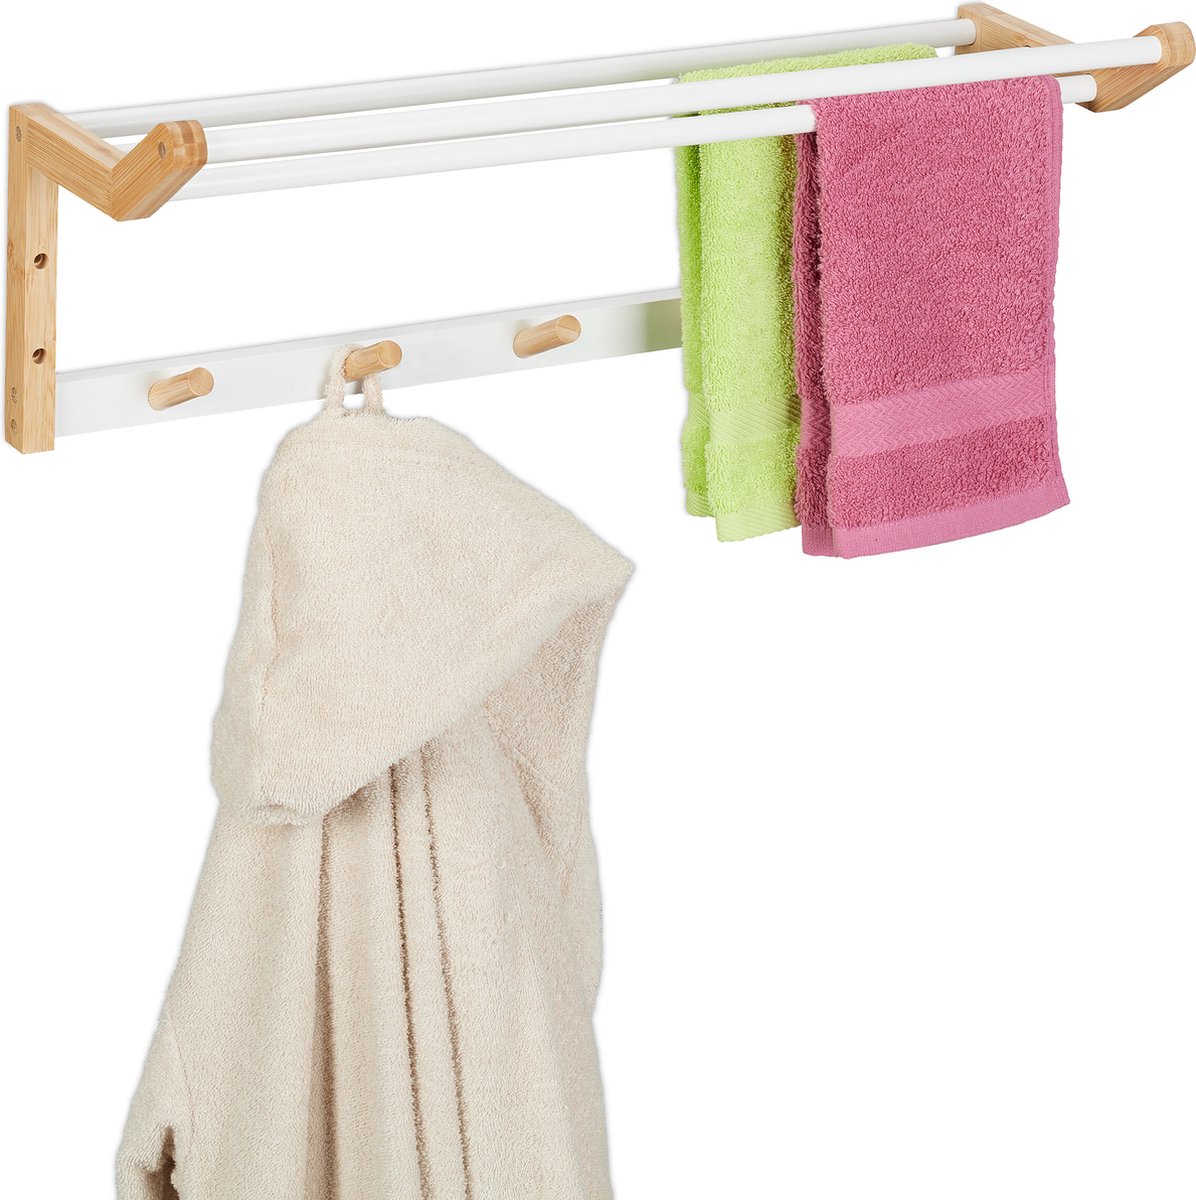 Relaxdays handdoekrek muur - bamboe handdoekhouder met haakjes - handdoekstang badkamer